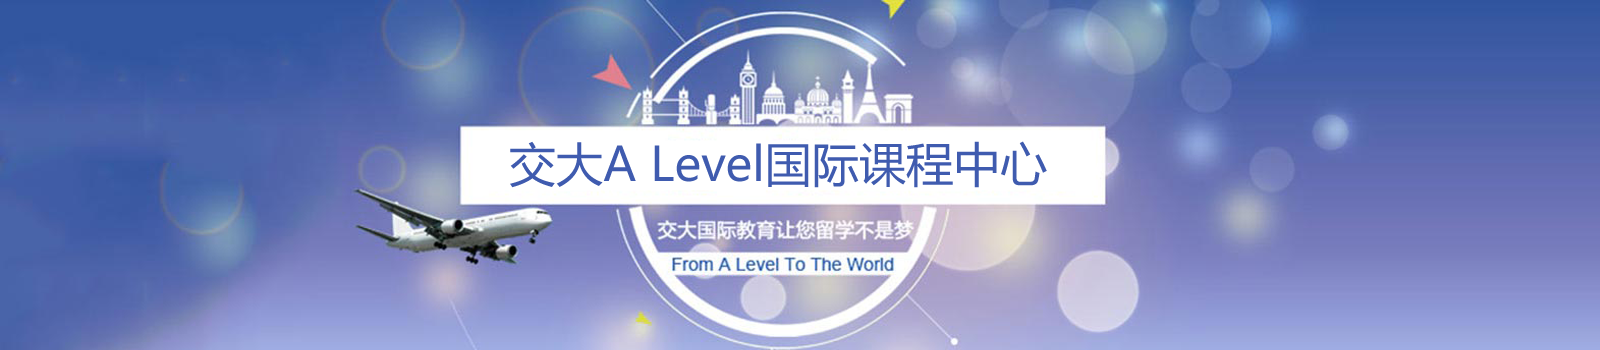 上海交大alevel国际课程中心